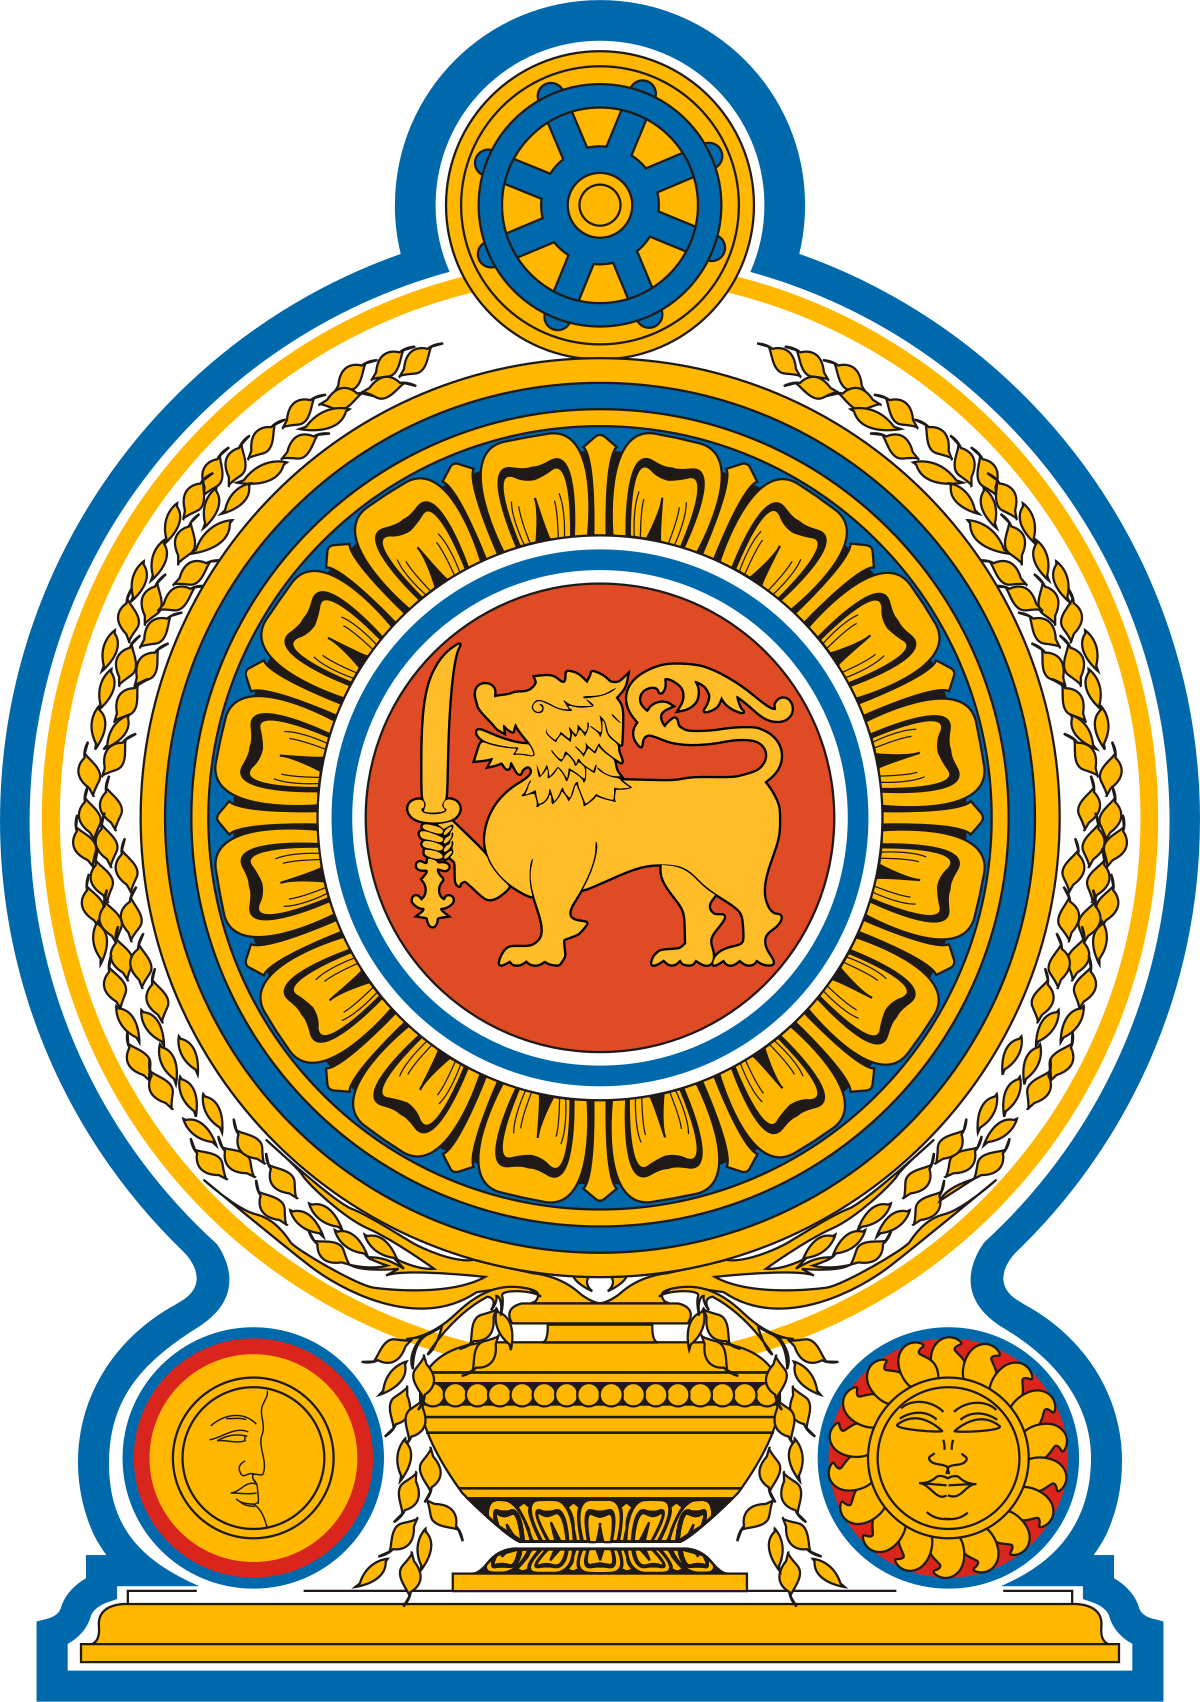 Sri Lanka National Emblem